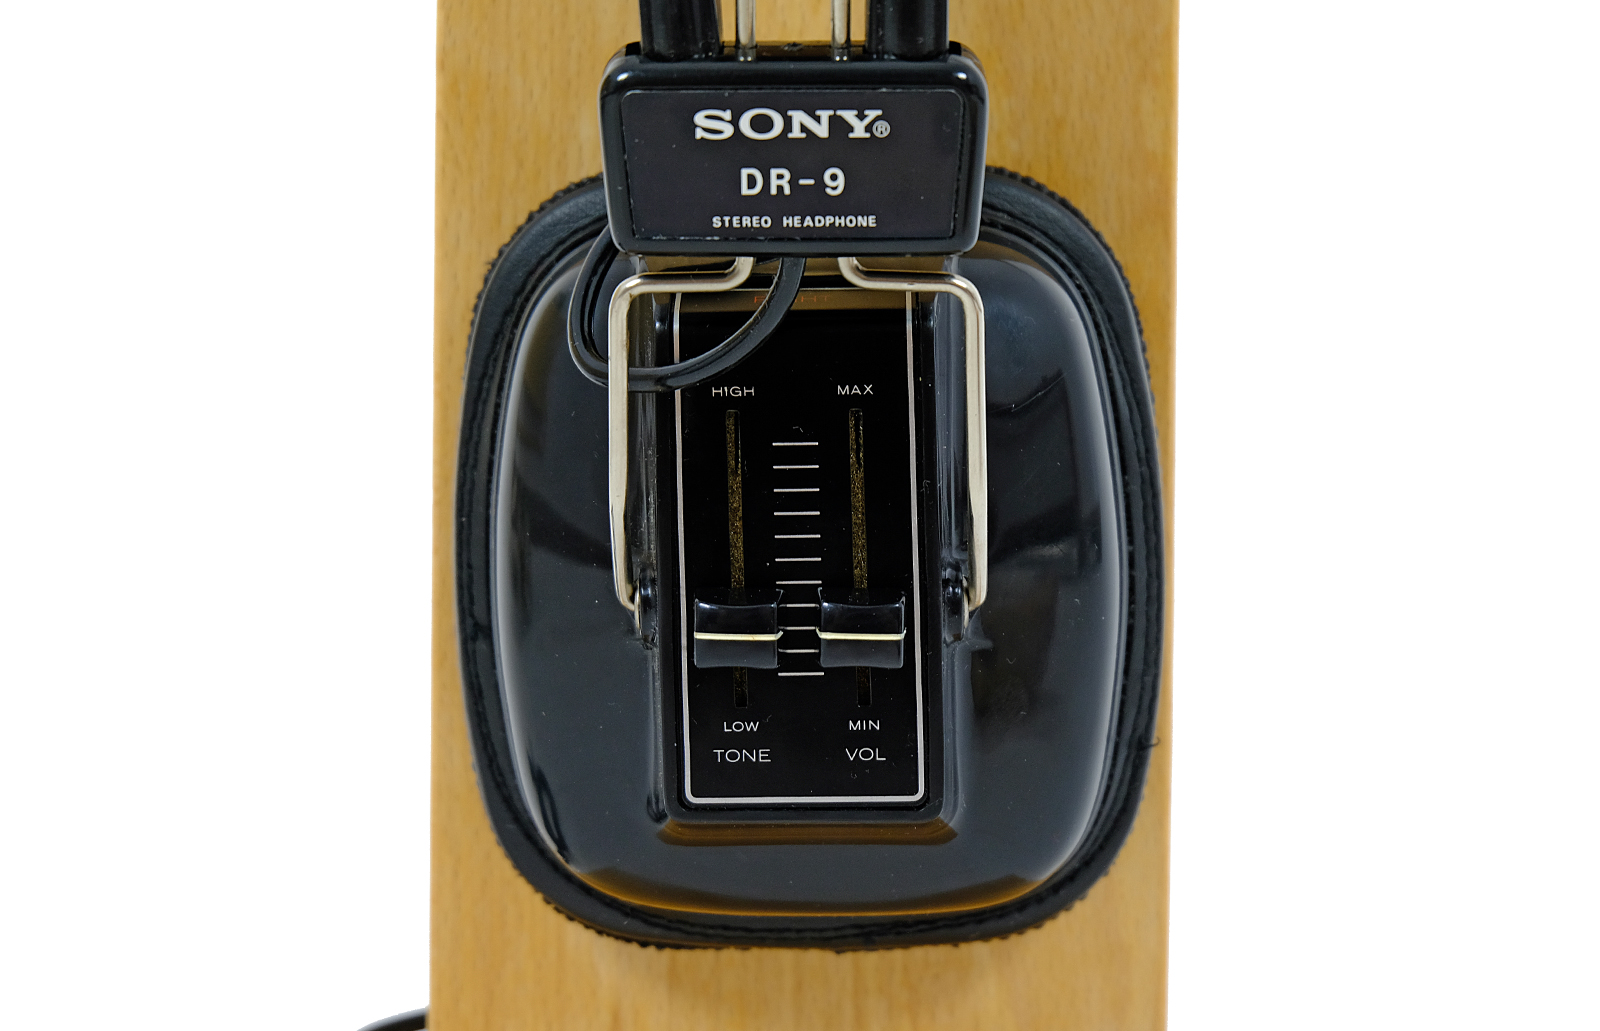 Sony DR-9 headphones